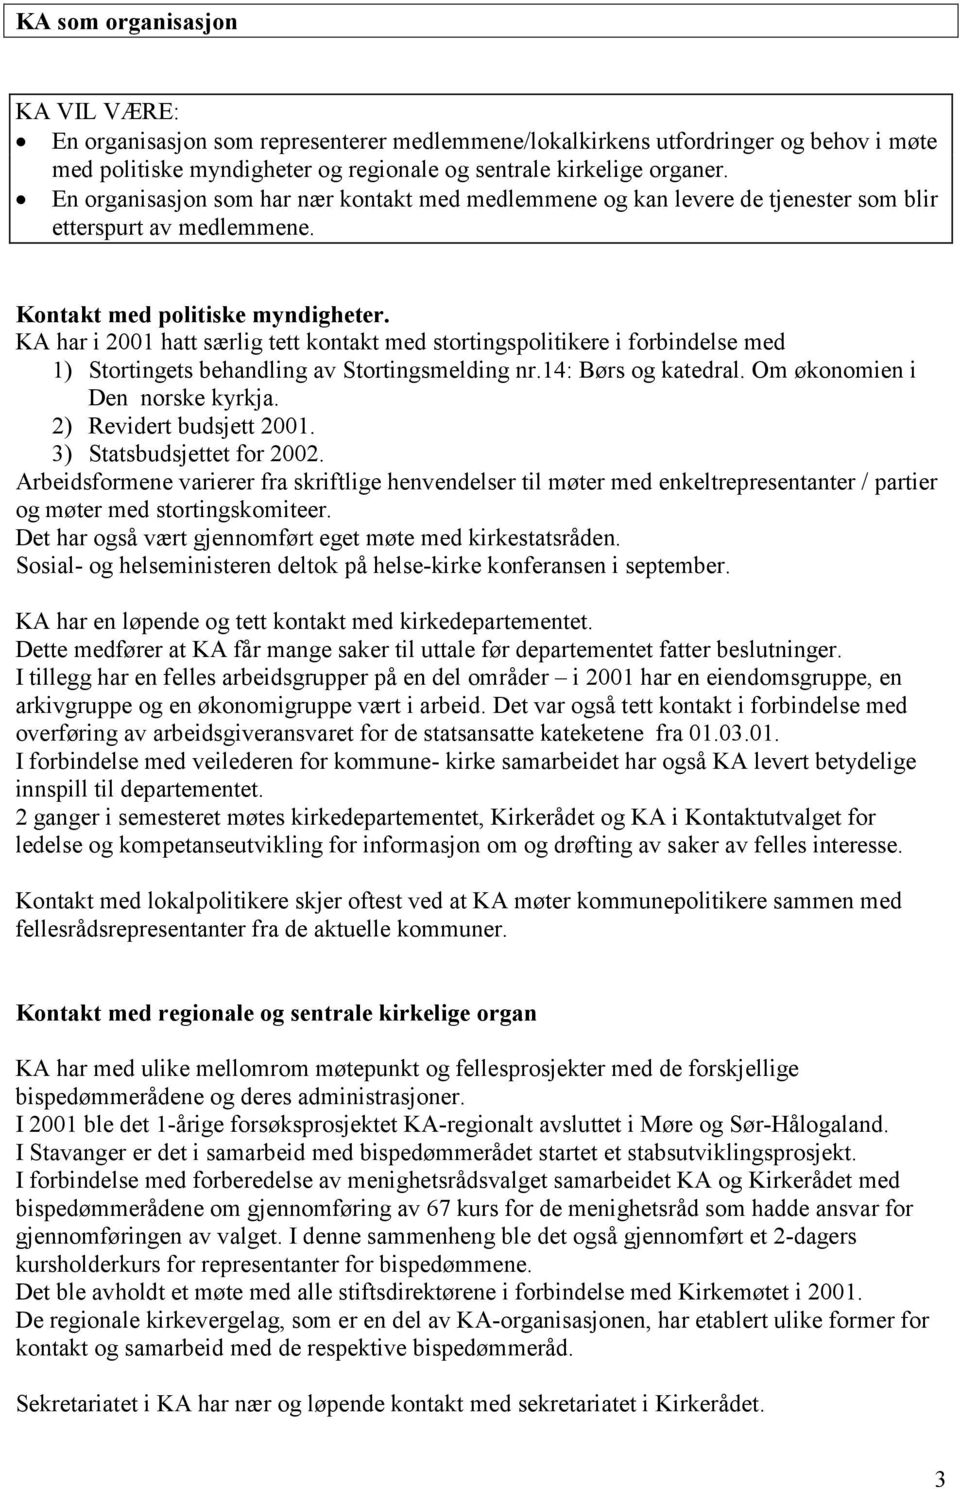 KA har i 2001 hatt særlig tett kontakt med stortingspolitikere i forbindelse med 1) Stortingets behandling av Stortingsmelding nr.14: Børs og katedral. Om økonomien i Den norske kyrkja.